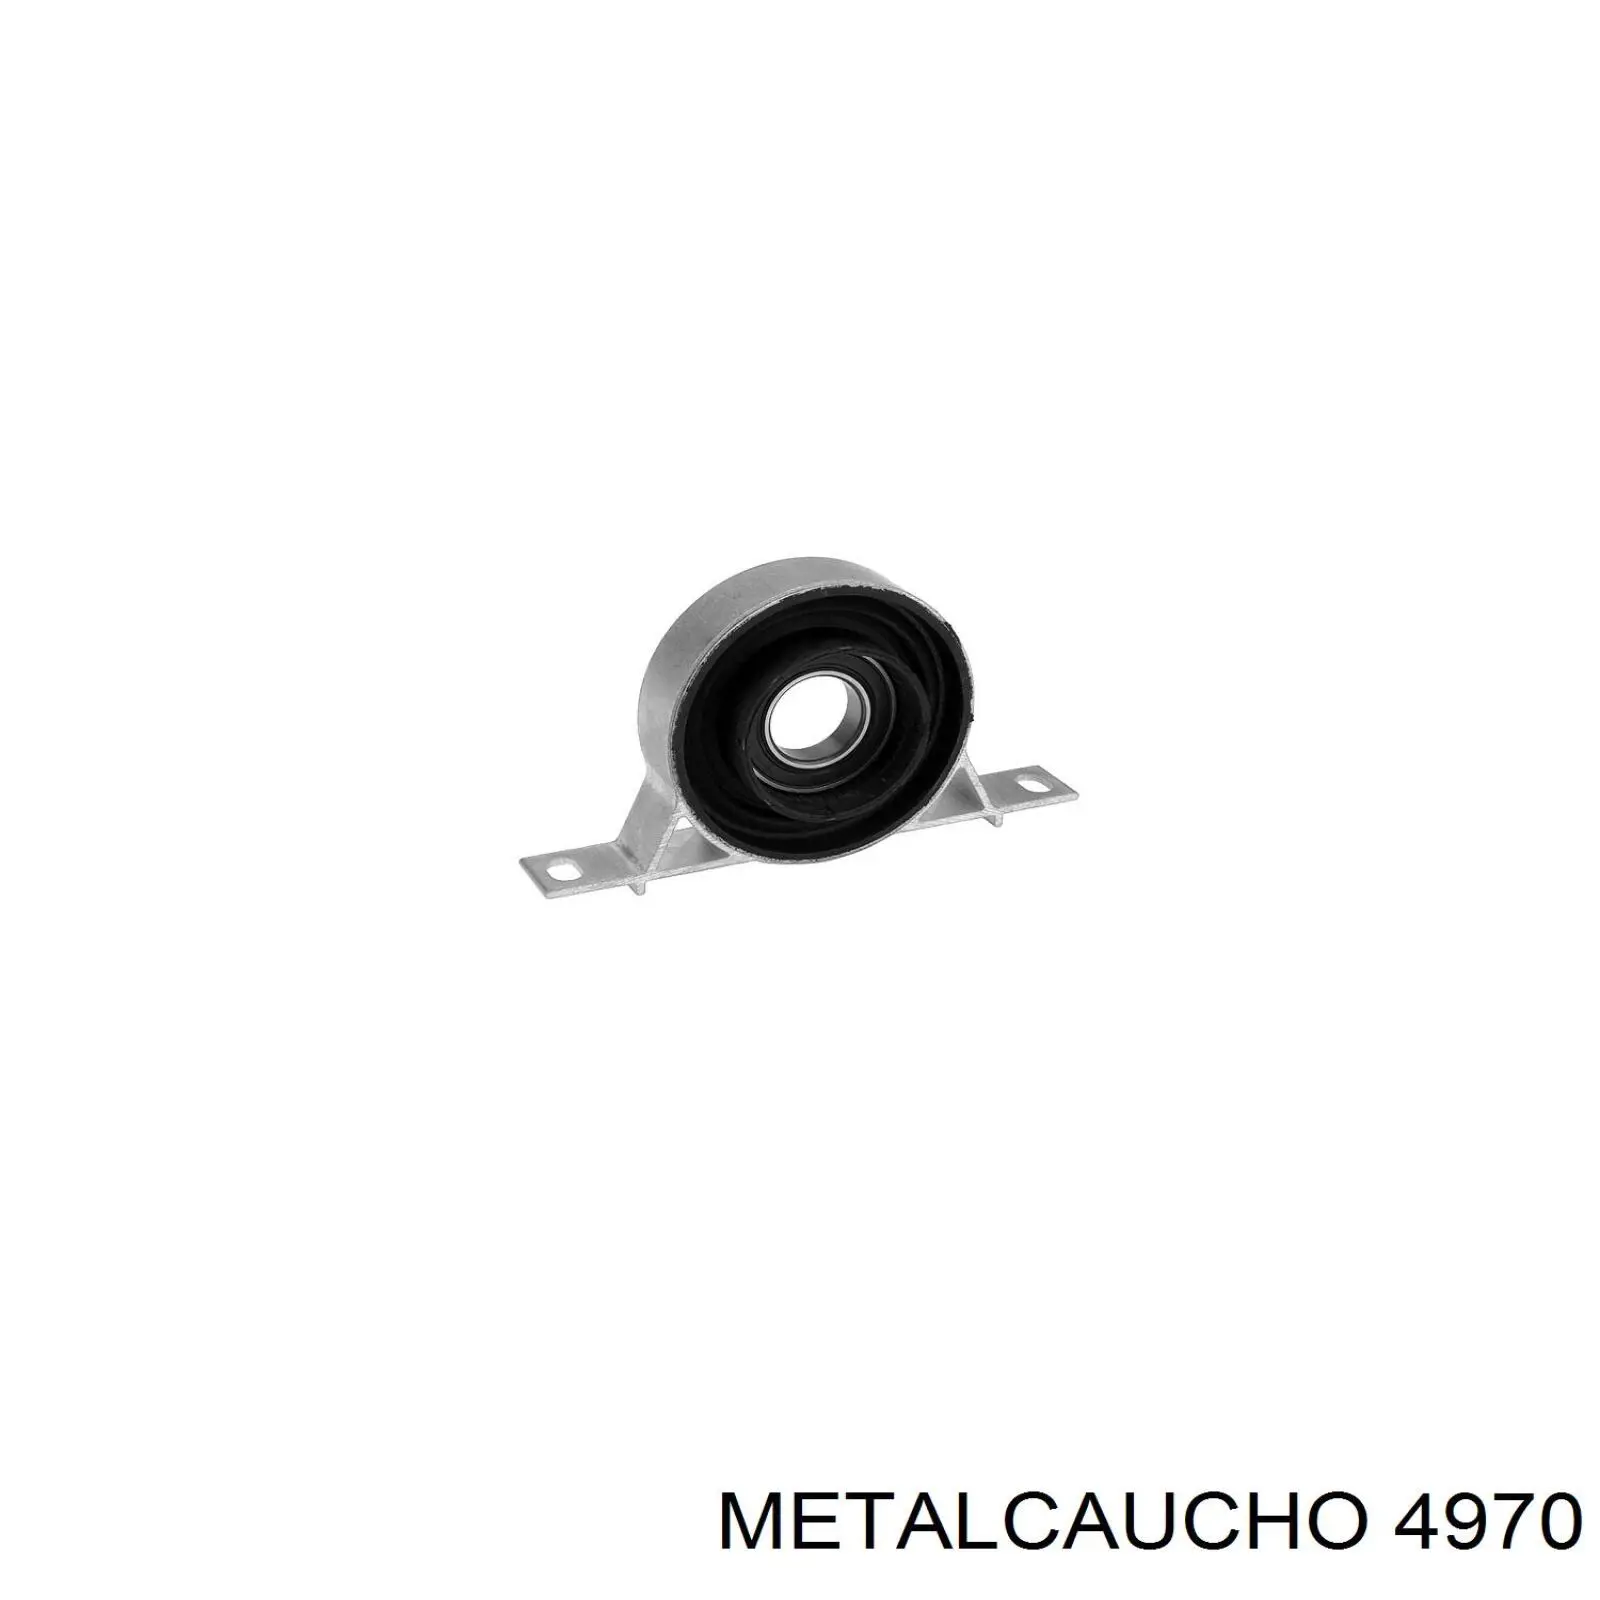 4970 Metalcaucho silentblock de suspensión delantero inferior